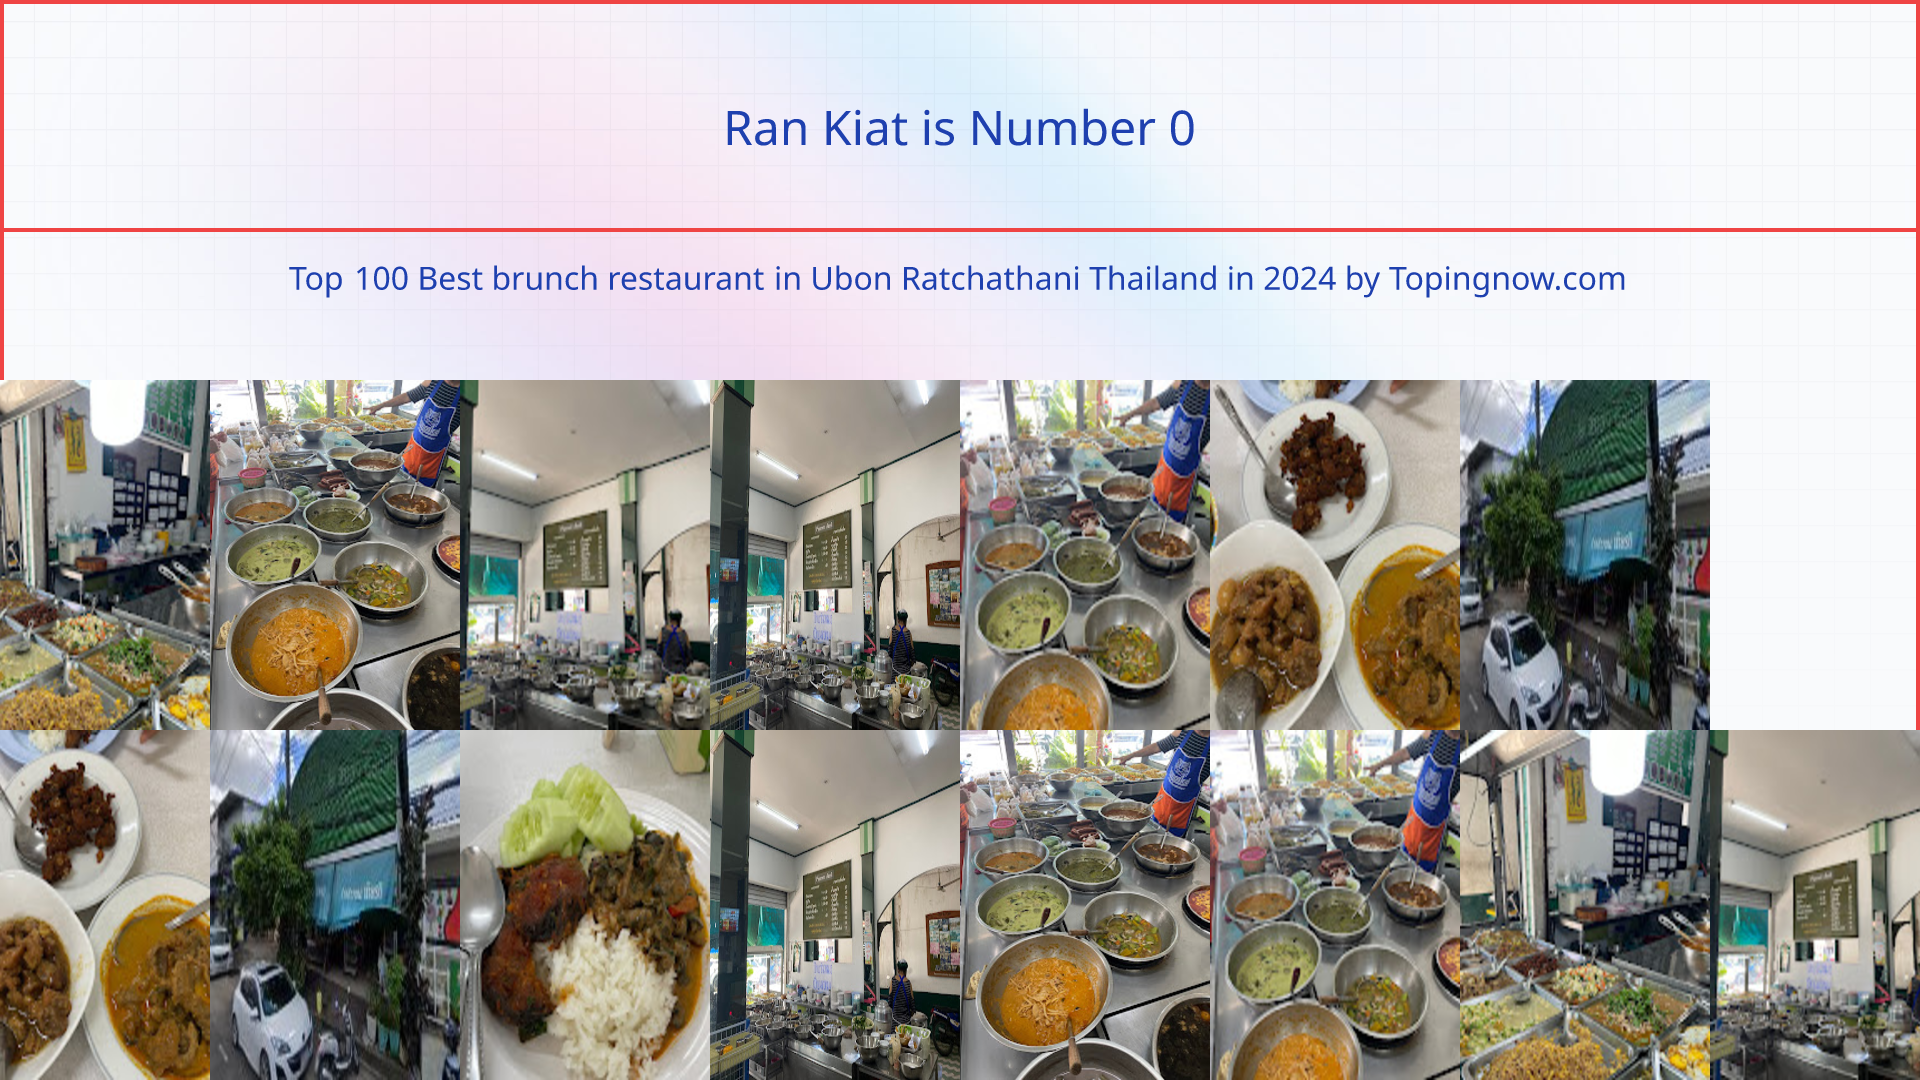 Ran Kiat: Top 100 Best brunch restaurant in Ubon Ratchathani Thailand in 2024